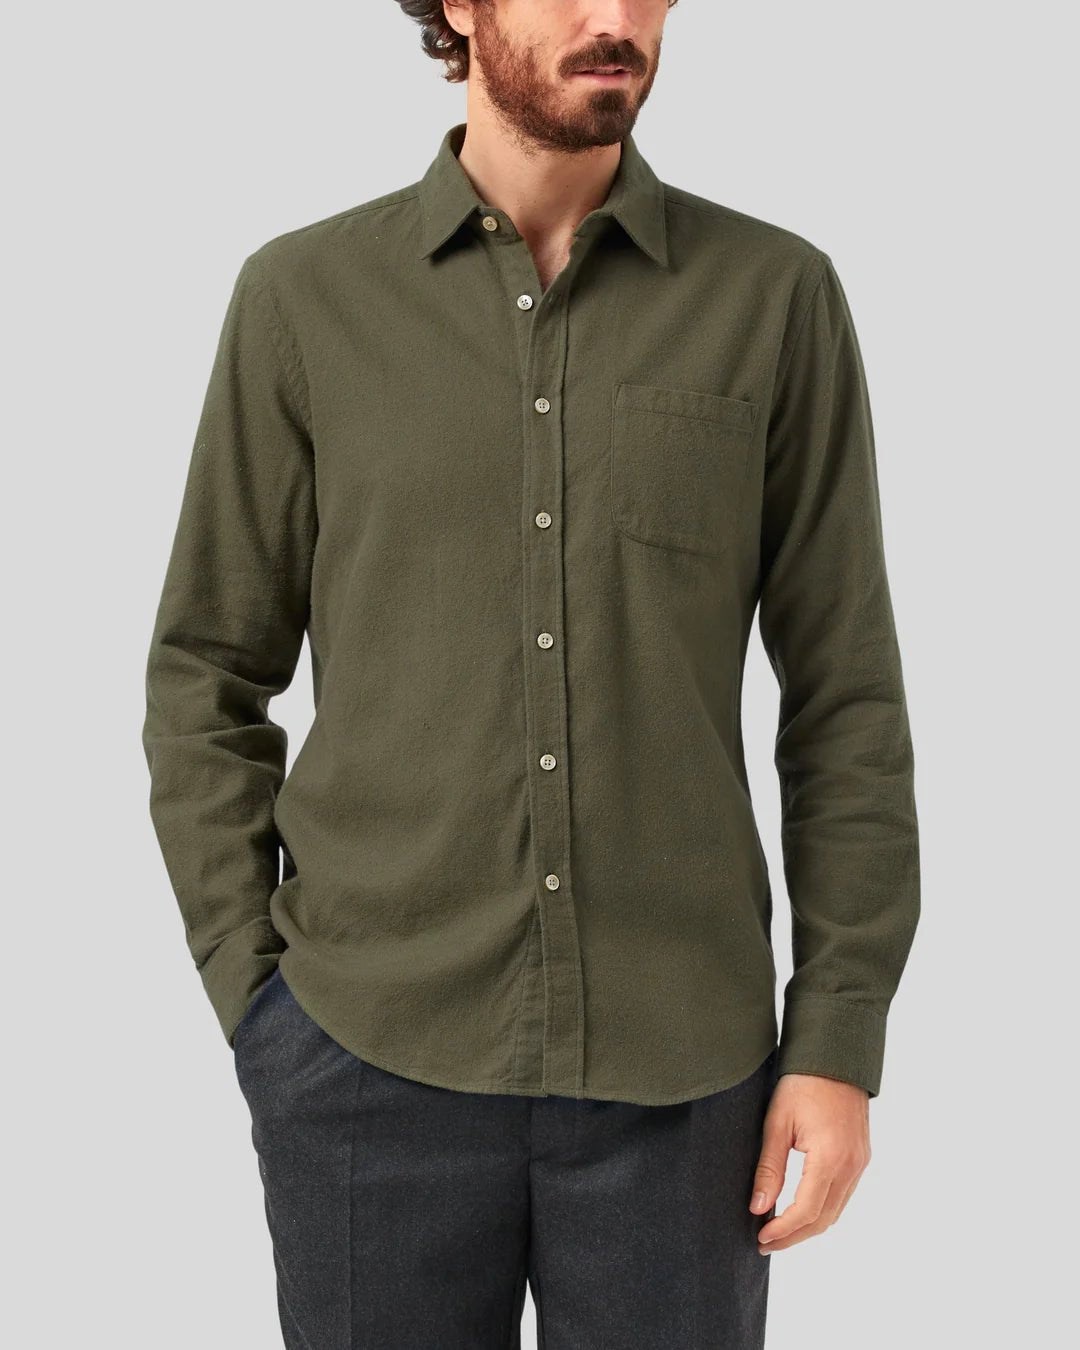 Teca Flannel Shirt - Portuguese Flannel - Danali - Teca-Olive-M